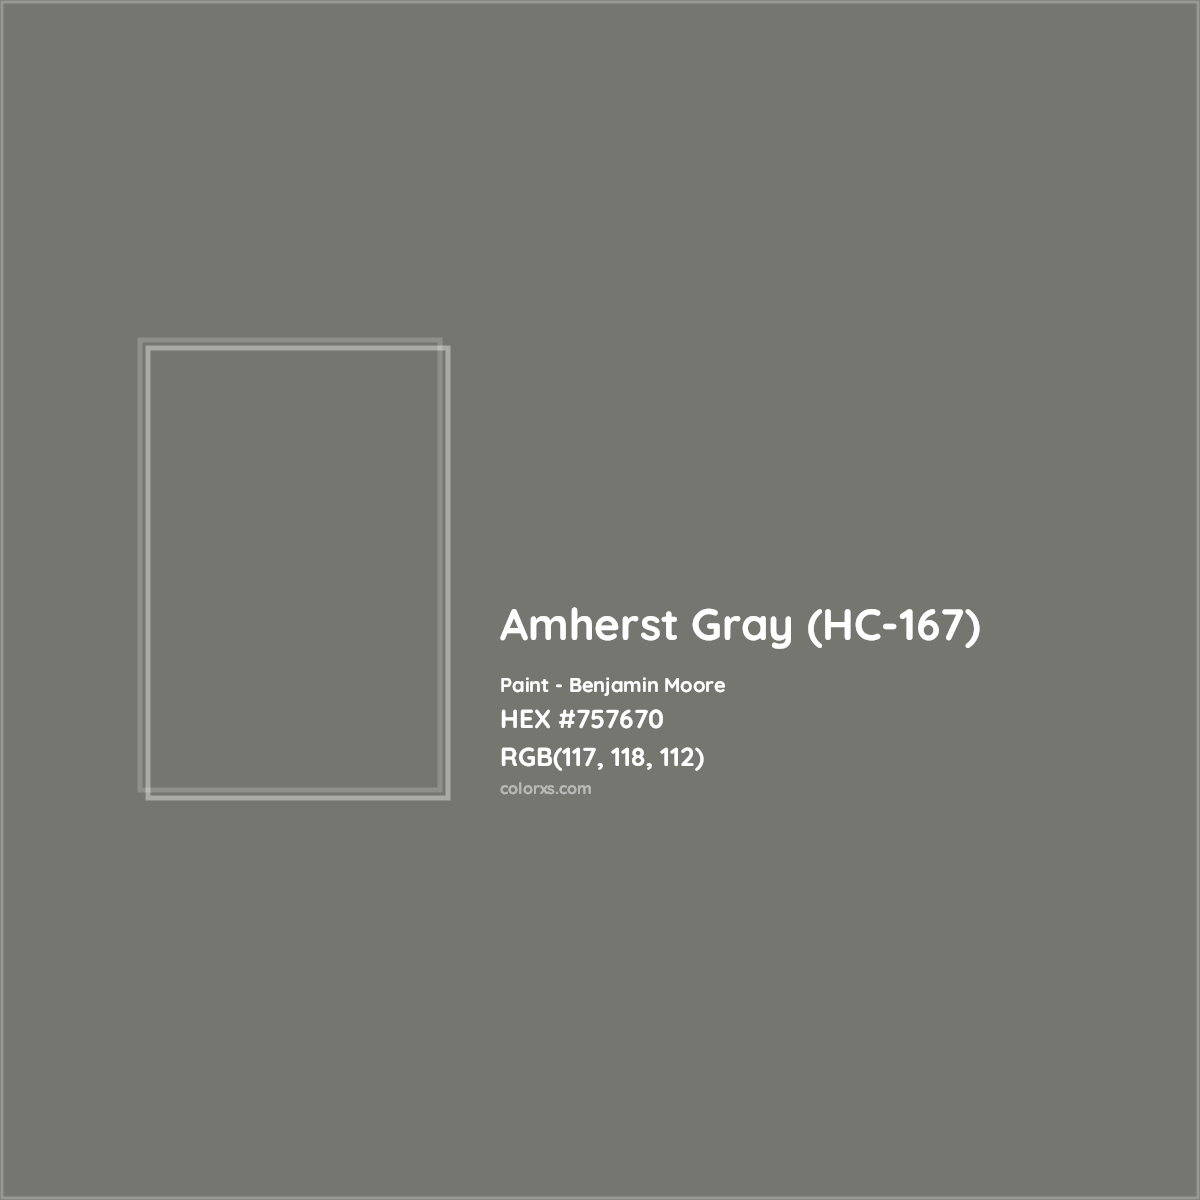 HEX #757670 Amherst Gray (HC-167) Paint Benjamin Moore - Color Code